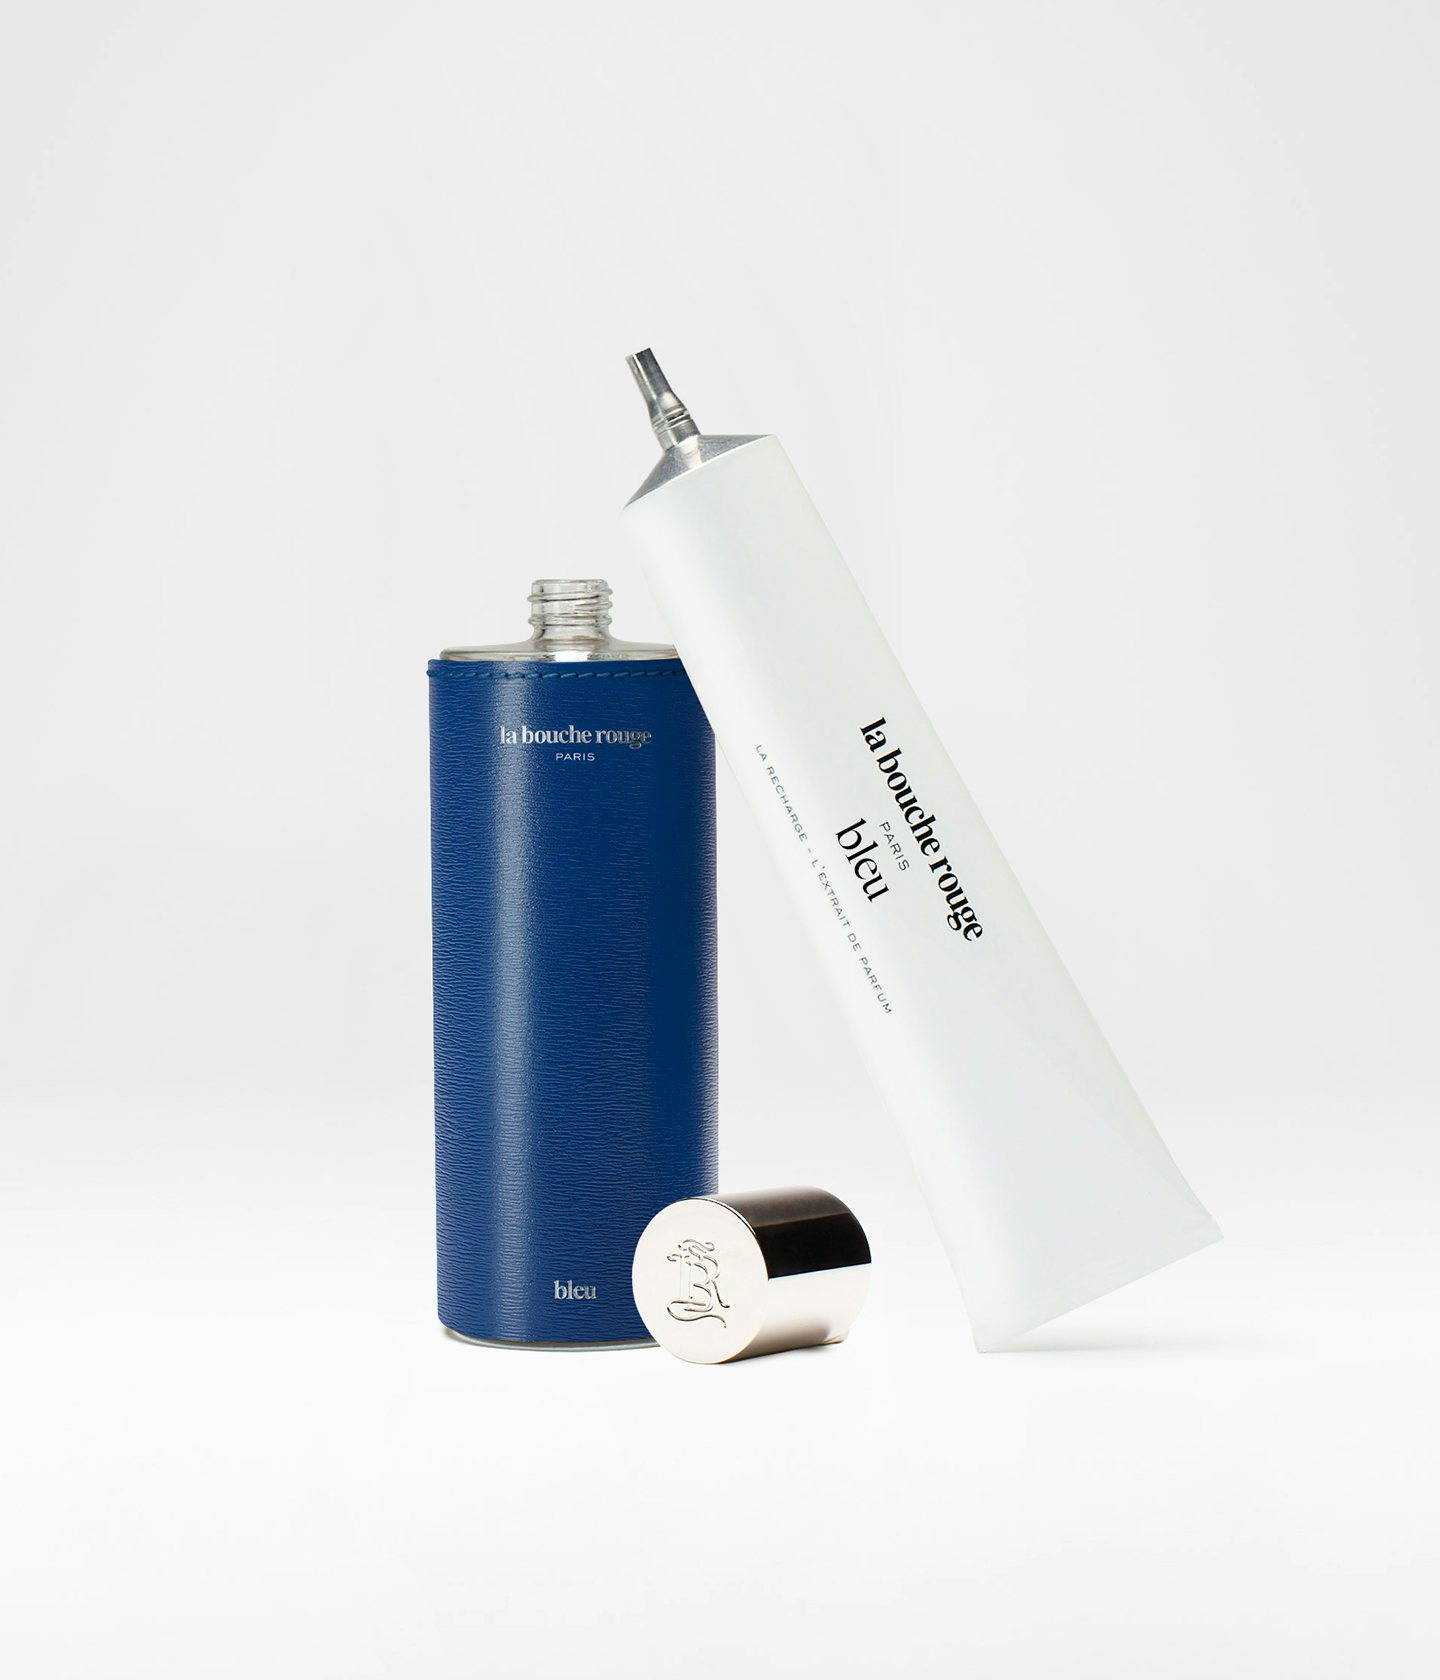 La bouche rouge Extrait de Parfum Bleu dans un écrin en cuir bleu et la recharge en aluminium